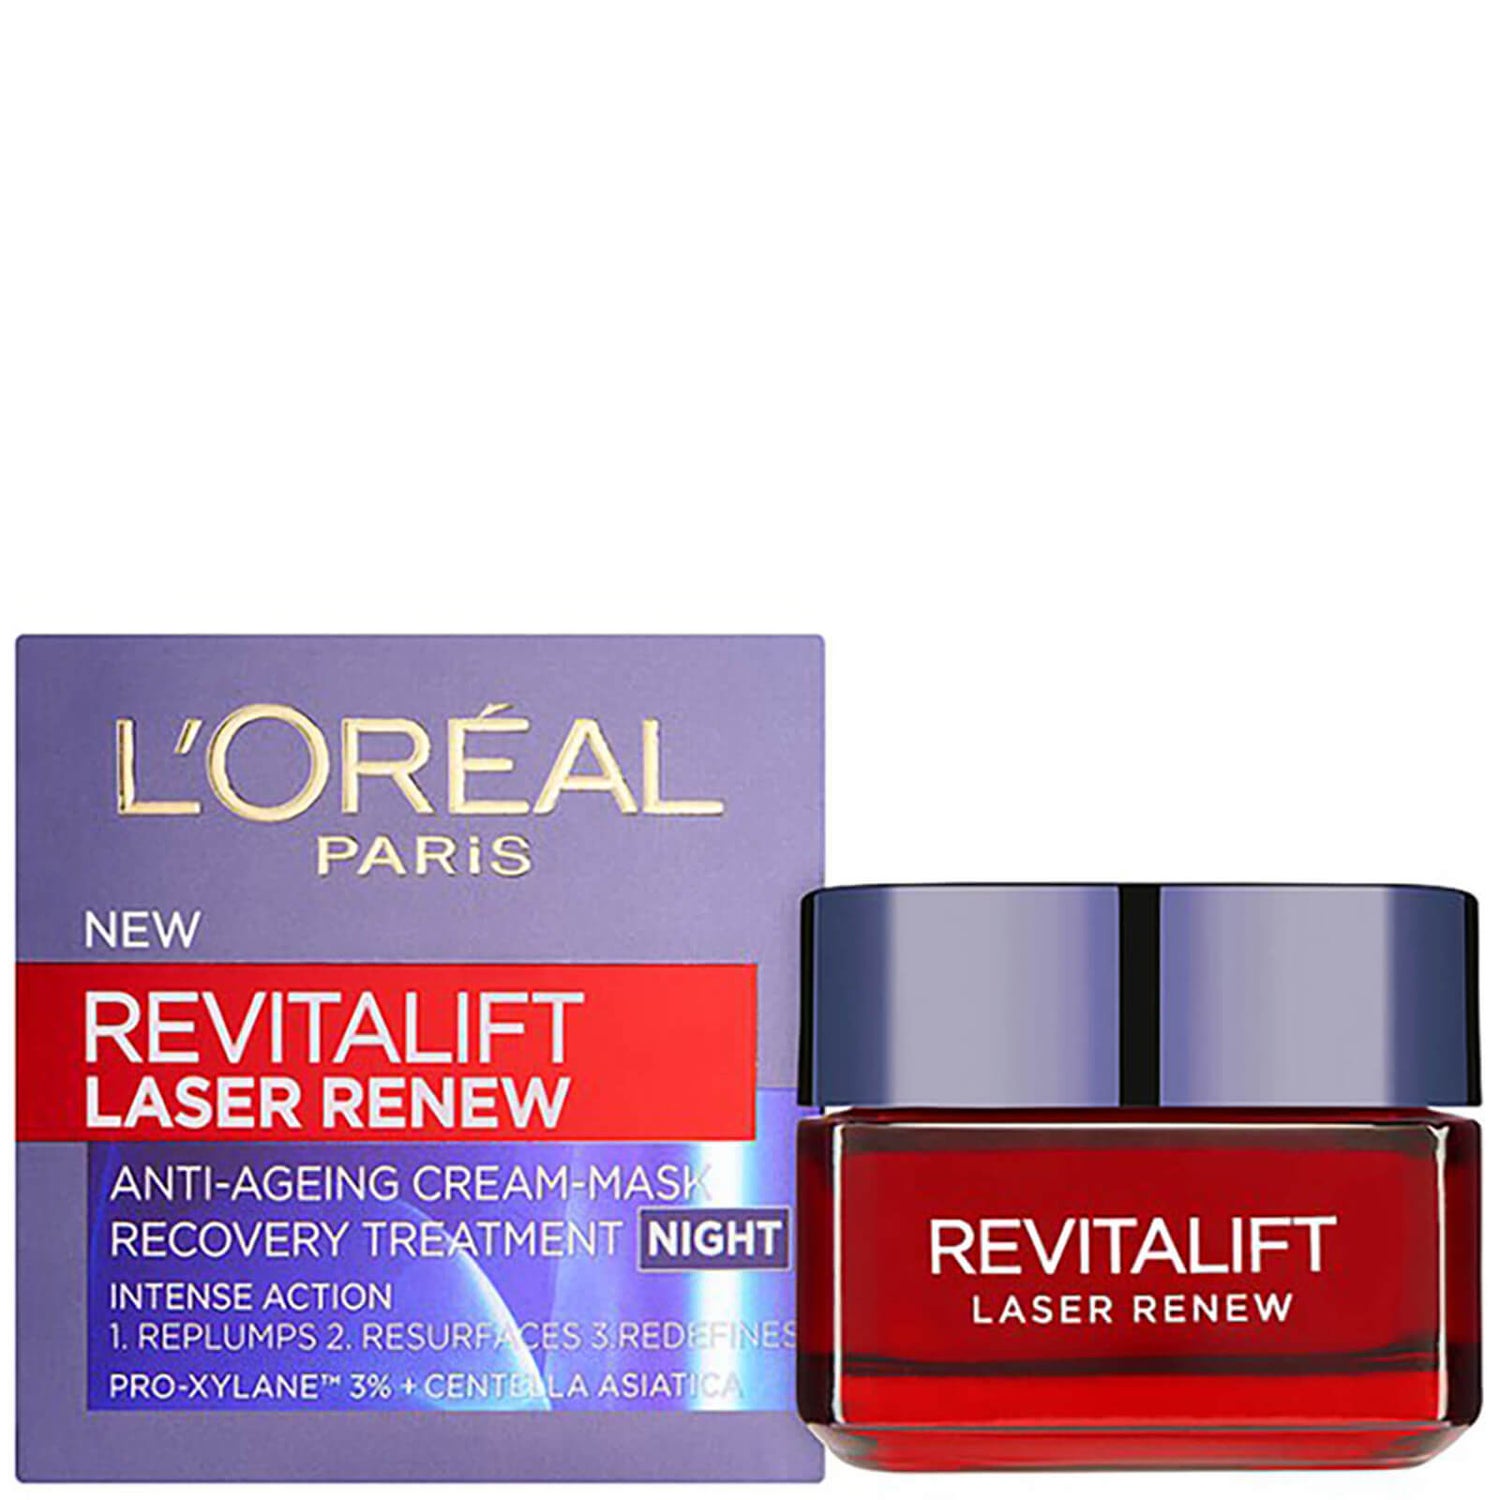 L'Oreal Paris Revitalift Laser Renew Night Cream 50ml